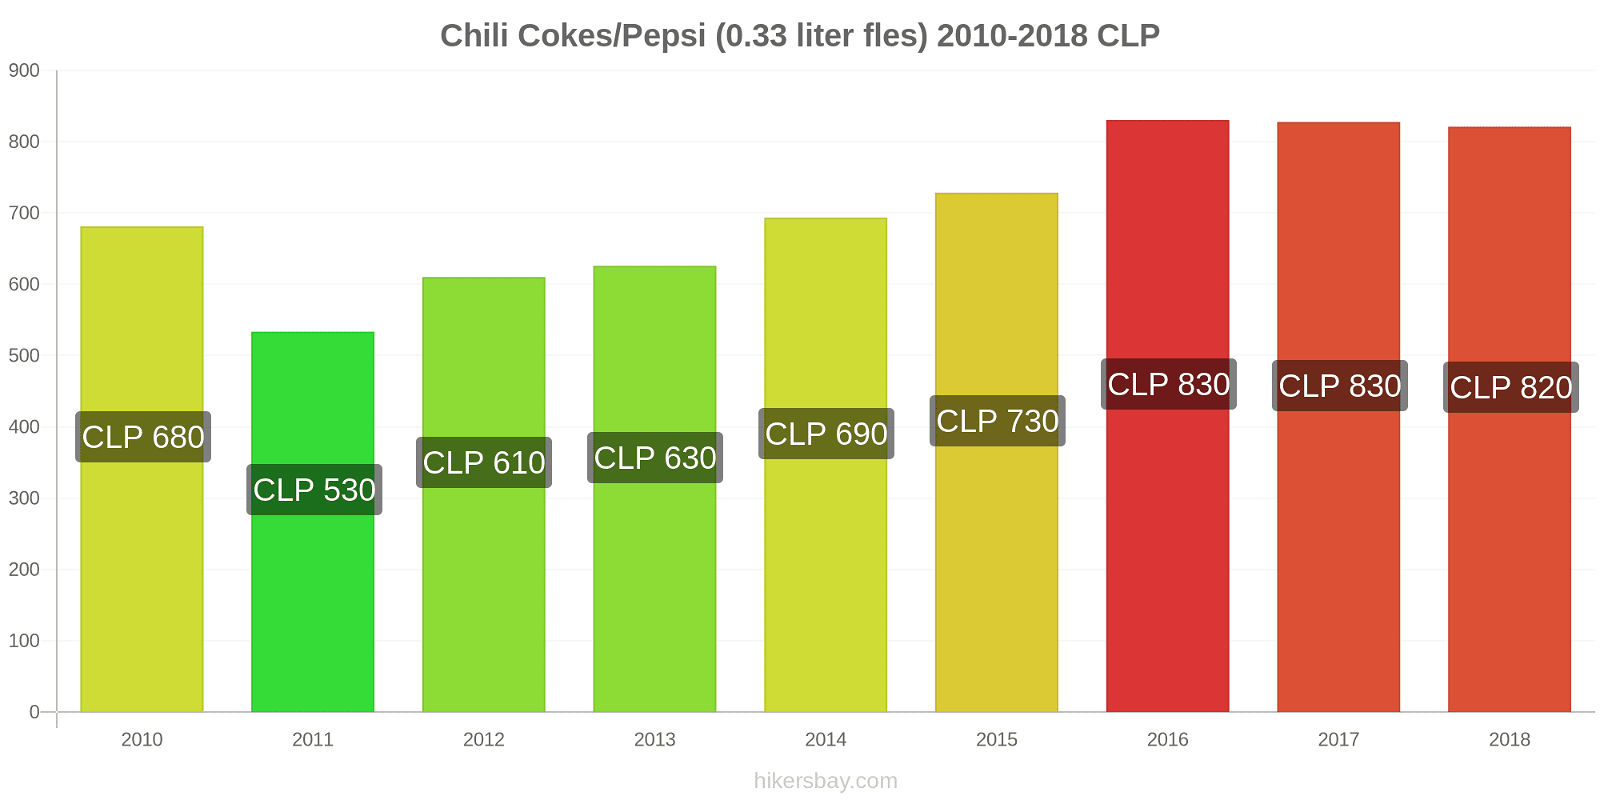 Chili prijswijzigingen Cokes/Pepsi (0,33 literfles) hikersbay.com